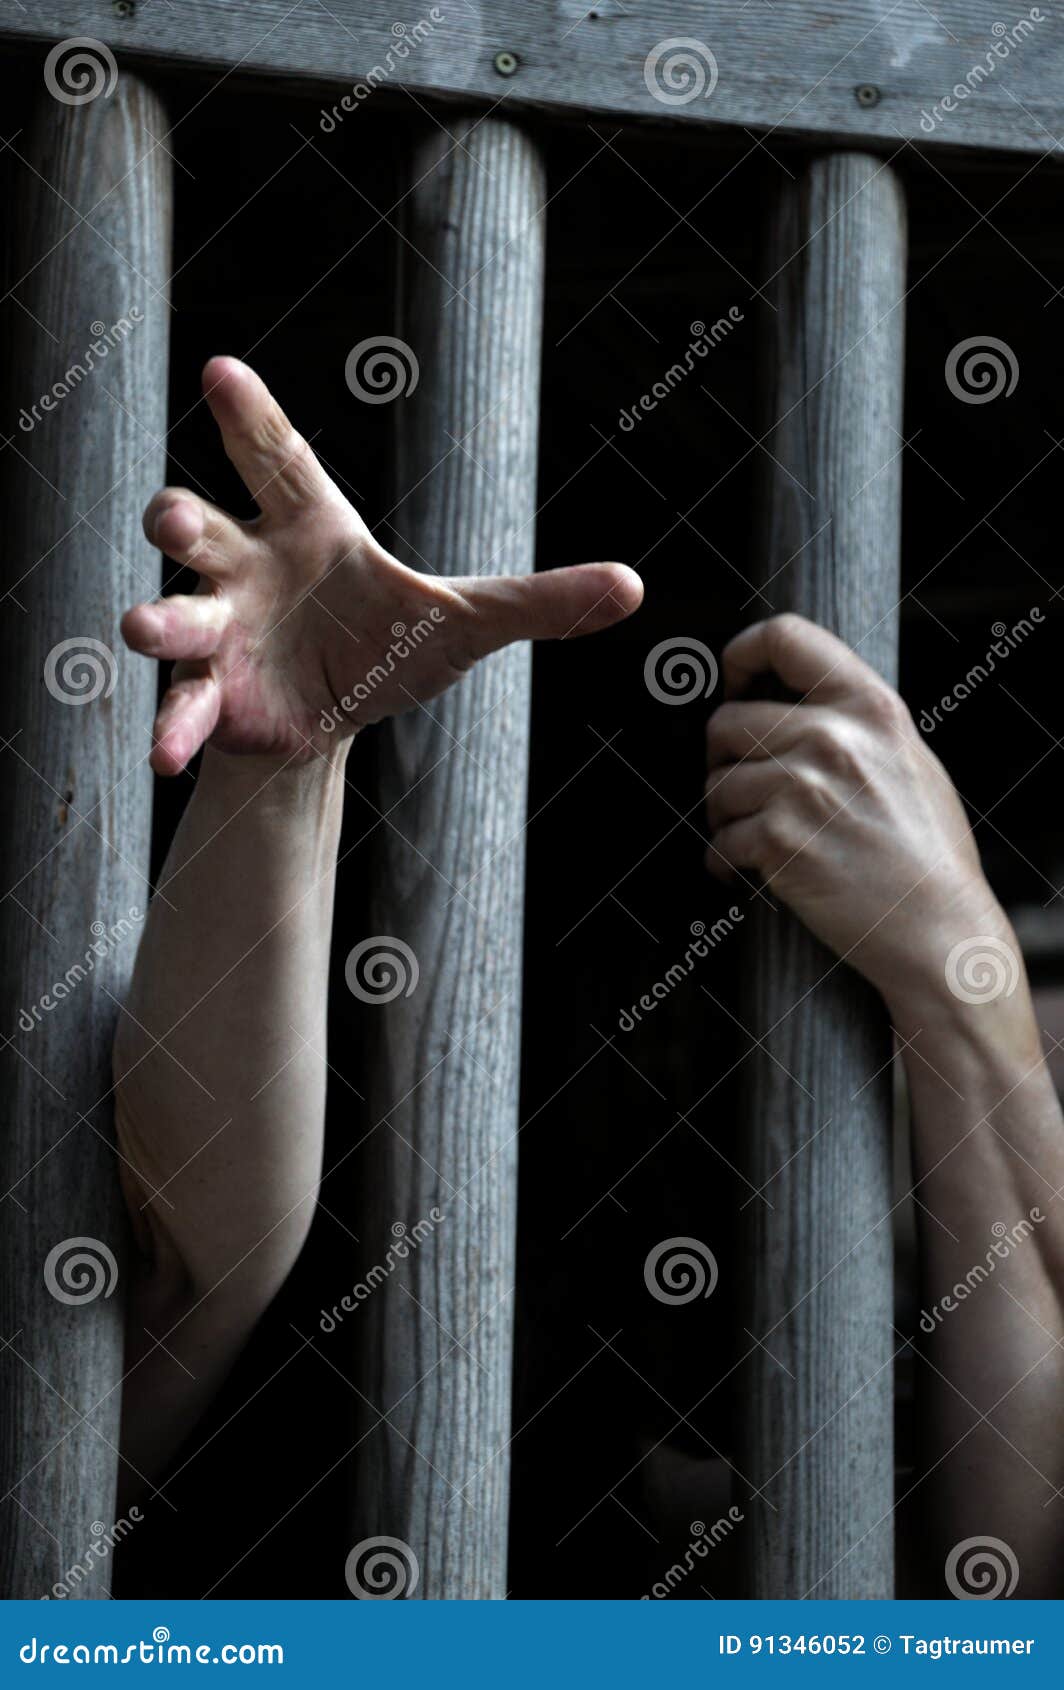 Prisoner Behind Wooden Bars Begging For Help Stock Photo Image Of